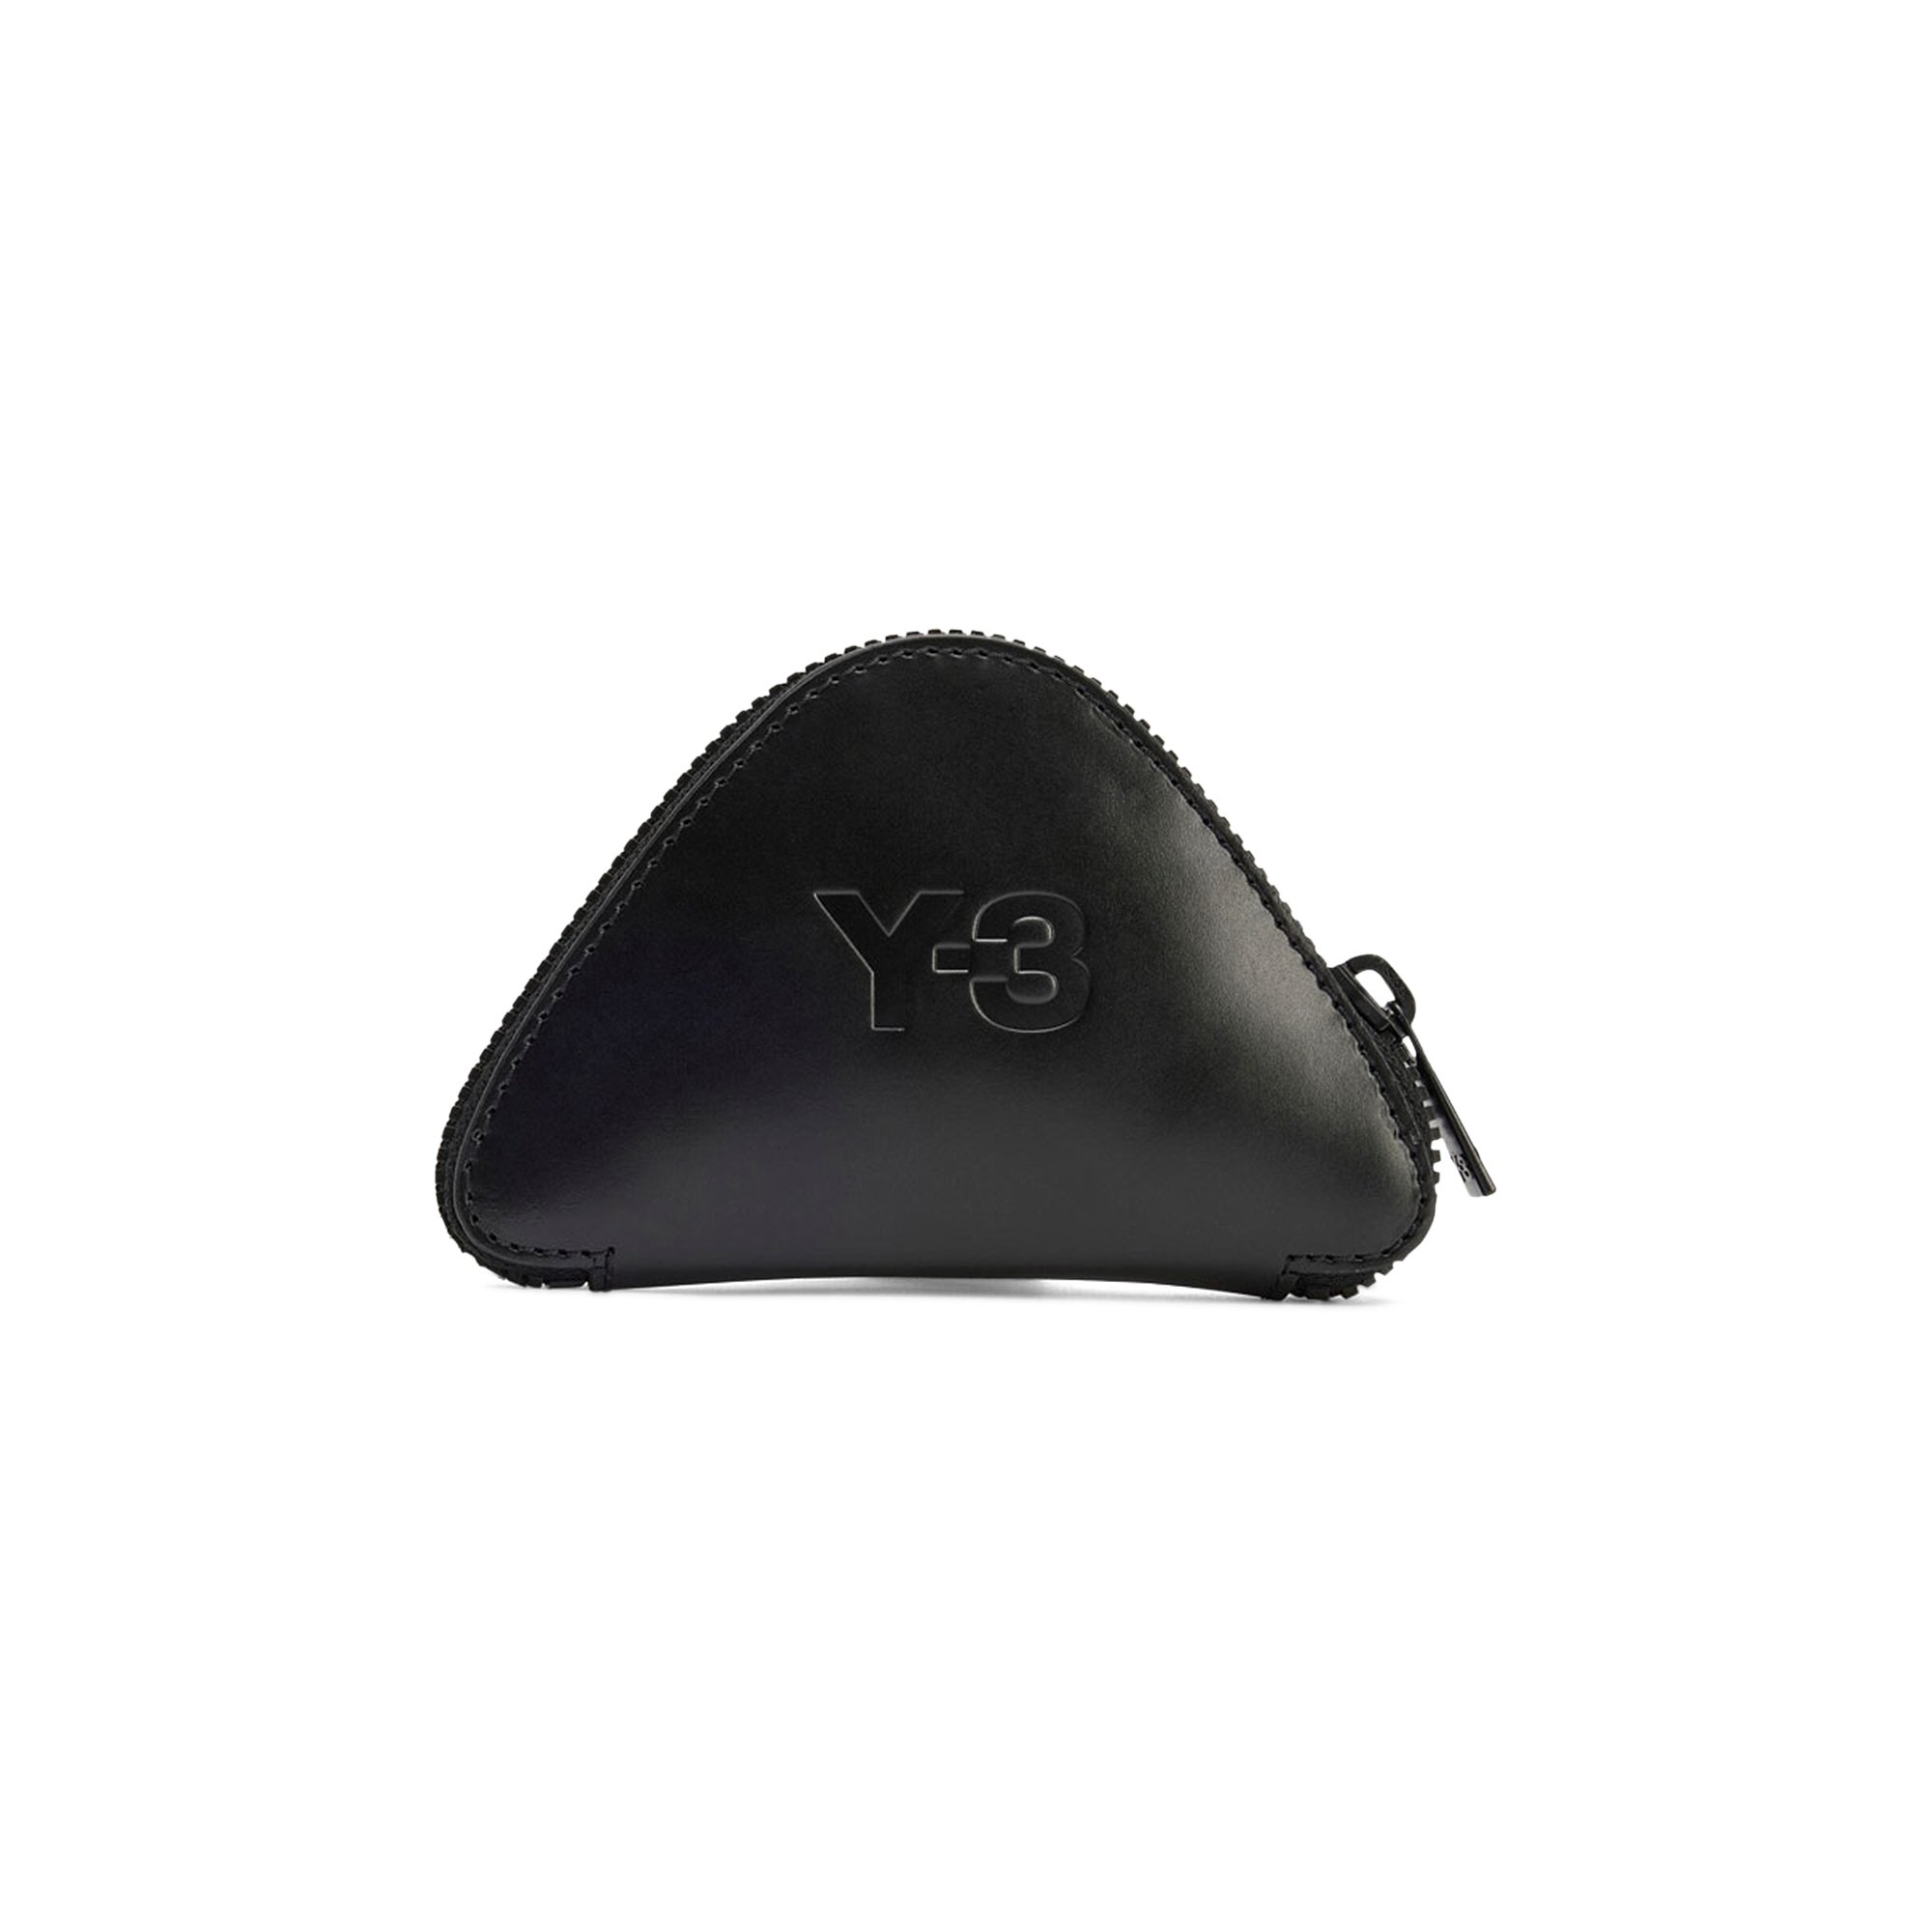 Buy Y-3 Packable Tote Bag 'Black' - H63099 | GOAT